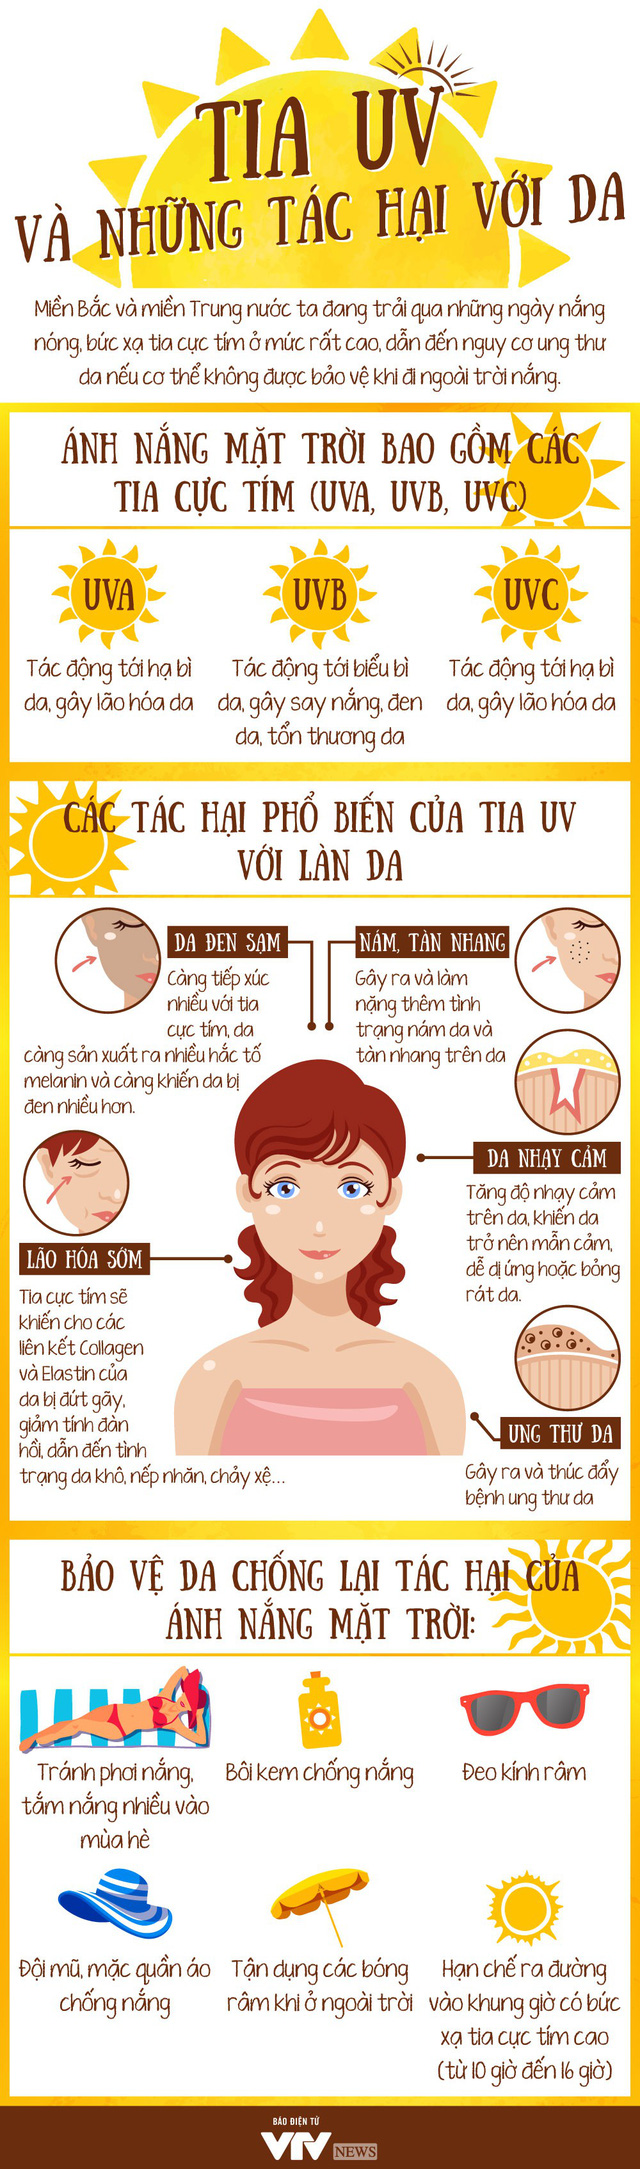 [Infographic] Tia UV và những tác hại khôn lường đến làn da - Ảnh 1.